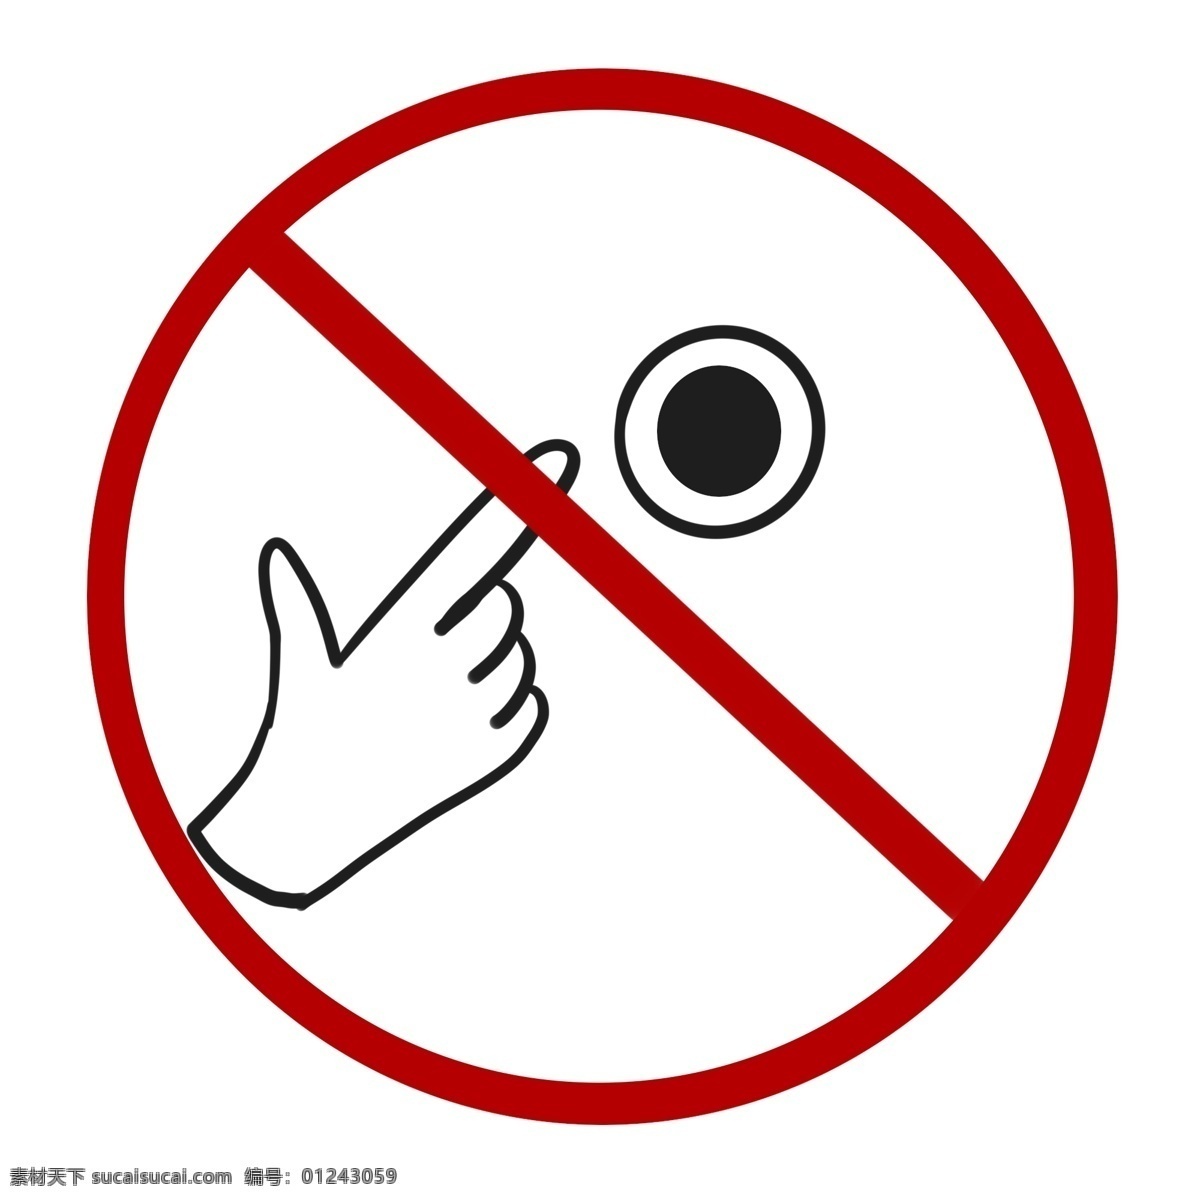 禁止 启动 图标 插图 禁止启动 禁止照相 创意插画 黑色 标牌 禁止标识 警告牌 温馨提示